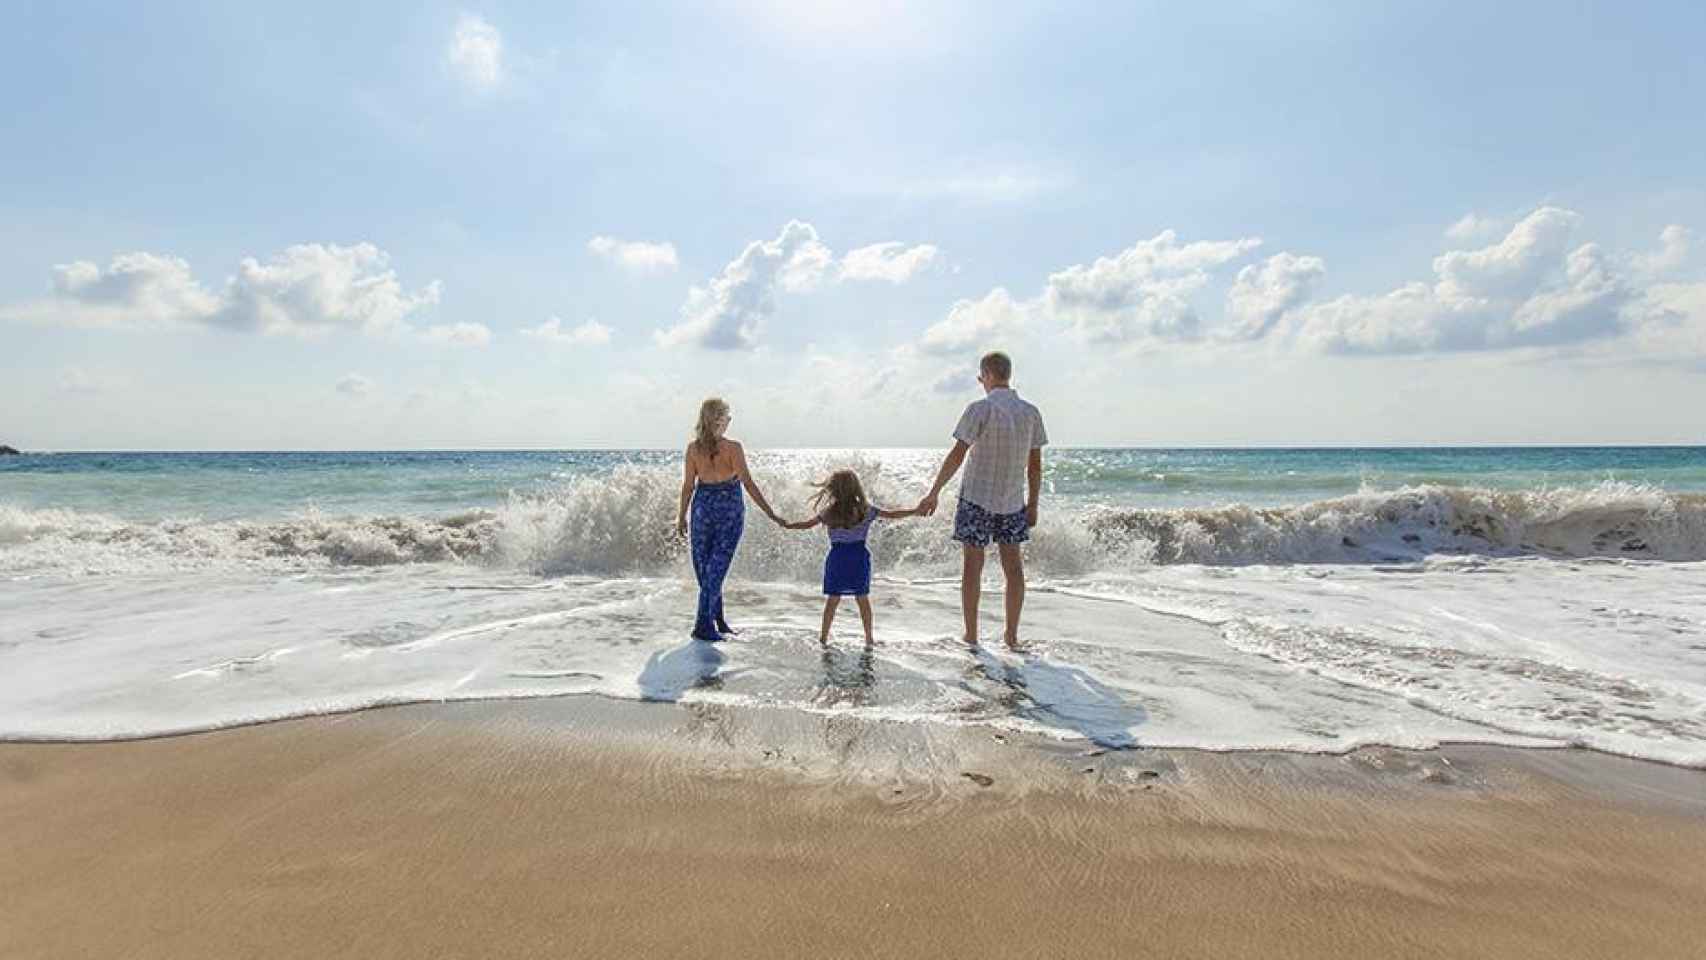 Familia de vacaciones de verano en la playa / UNSPLASH